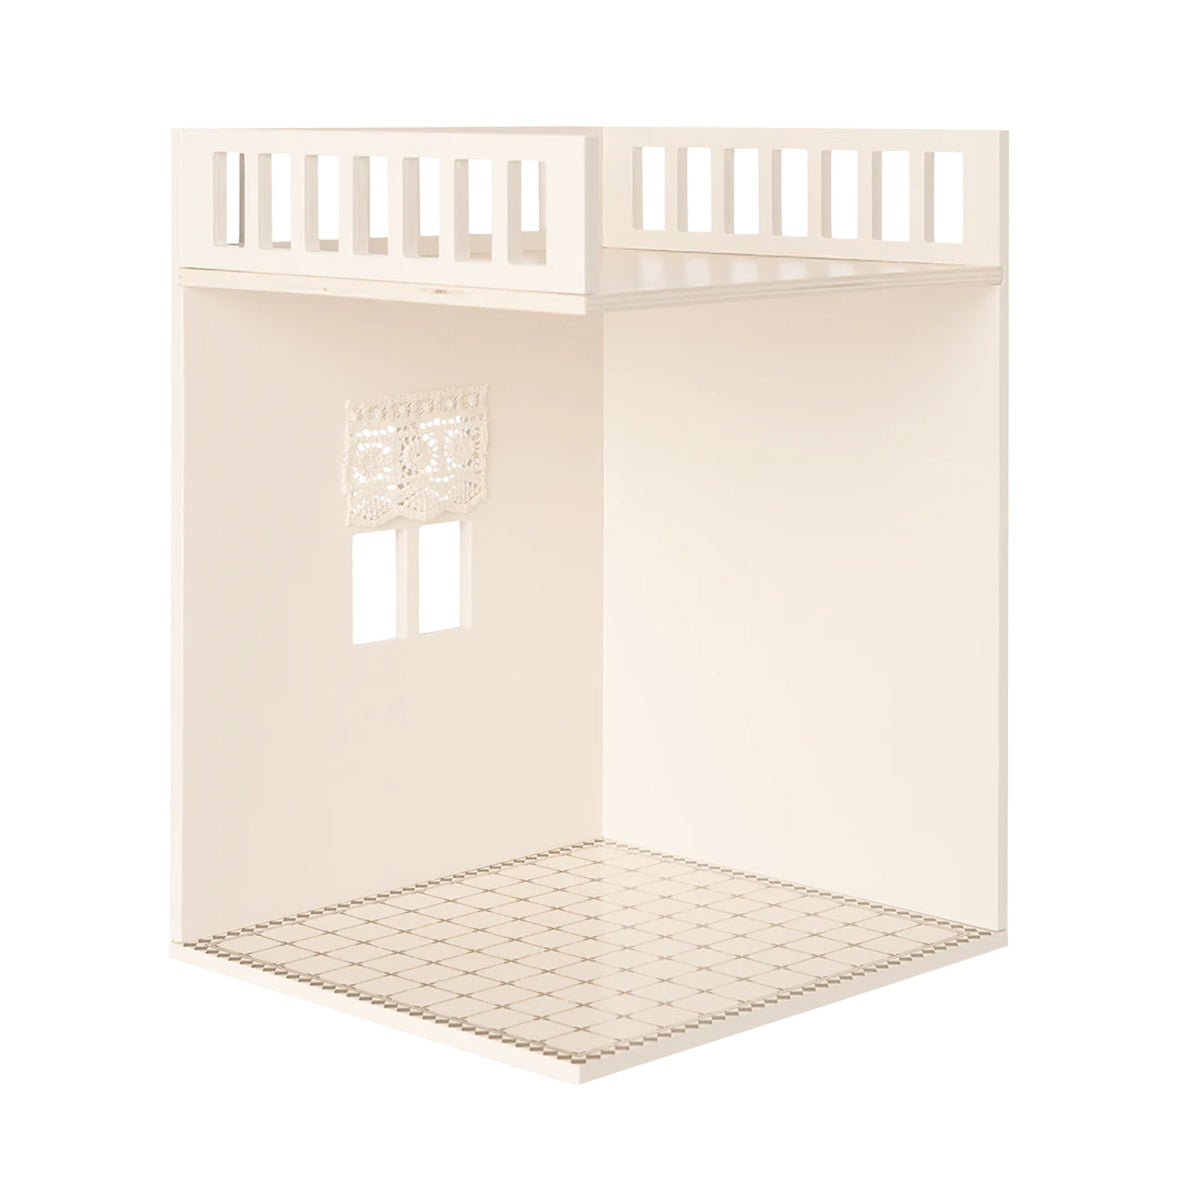 Maileg Dollhouse | House of Miniature Bathroom